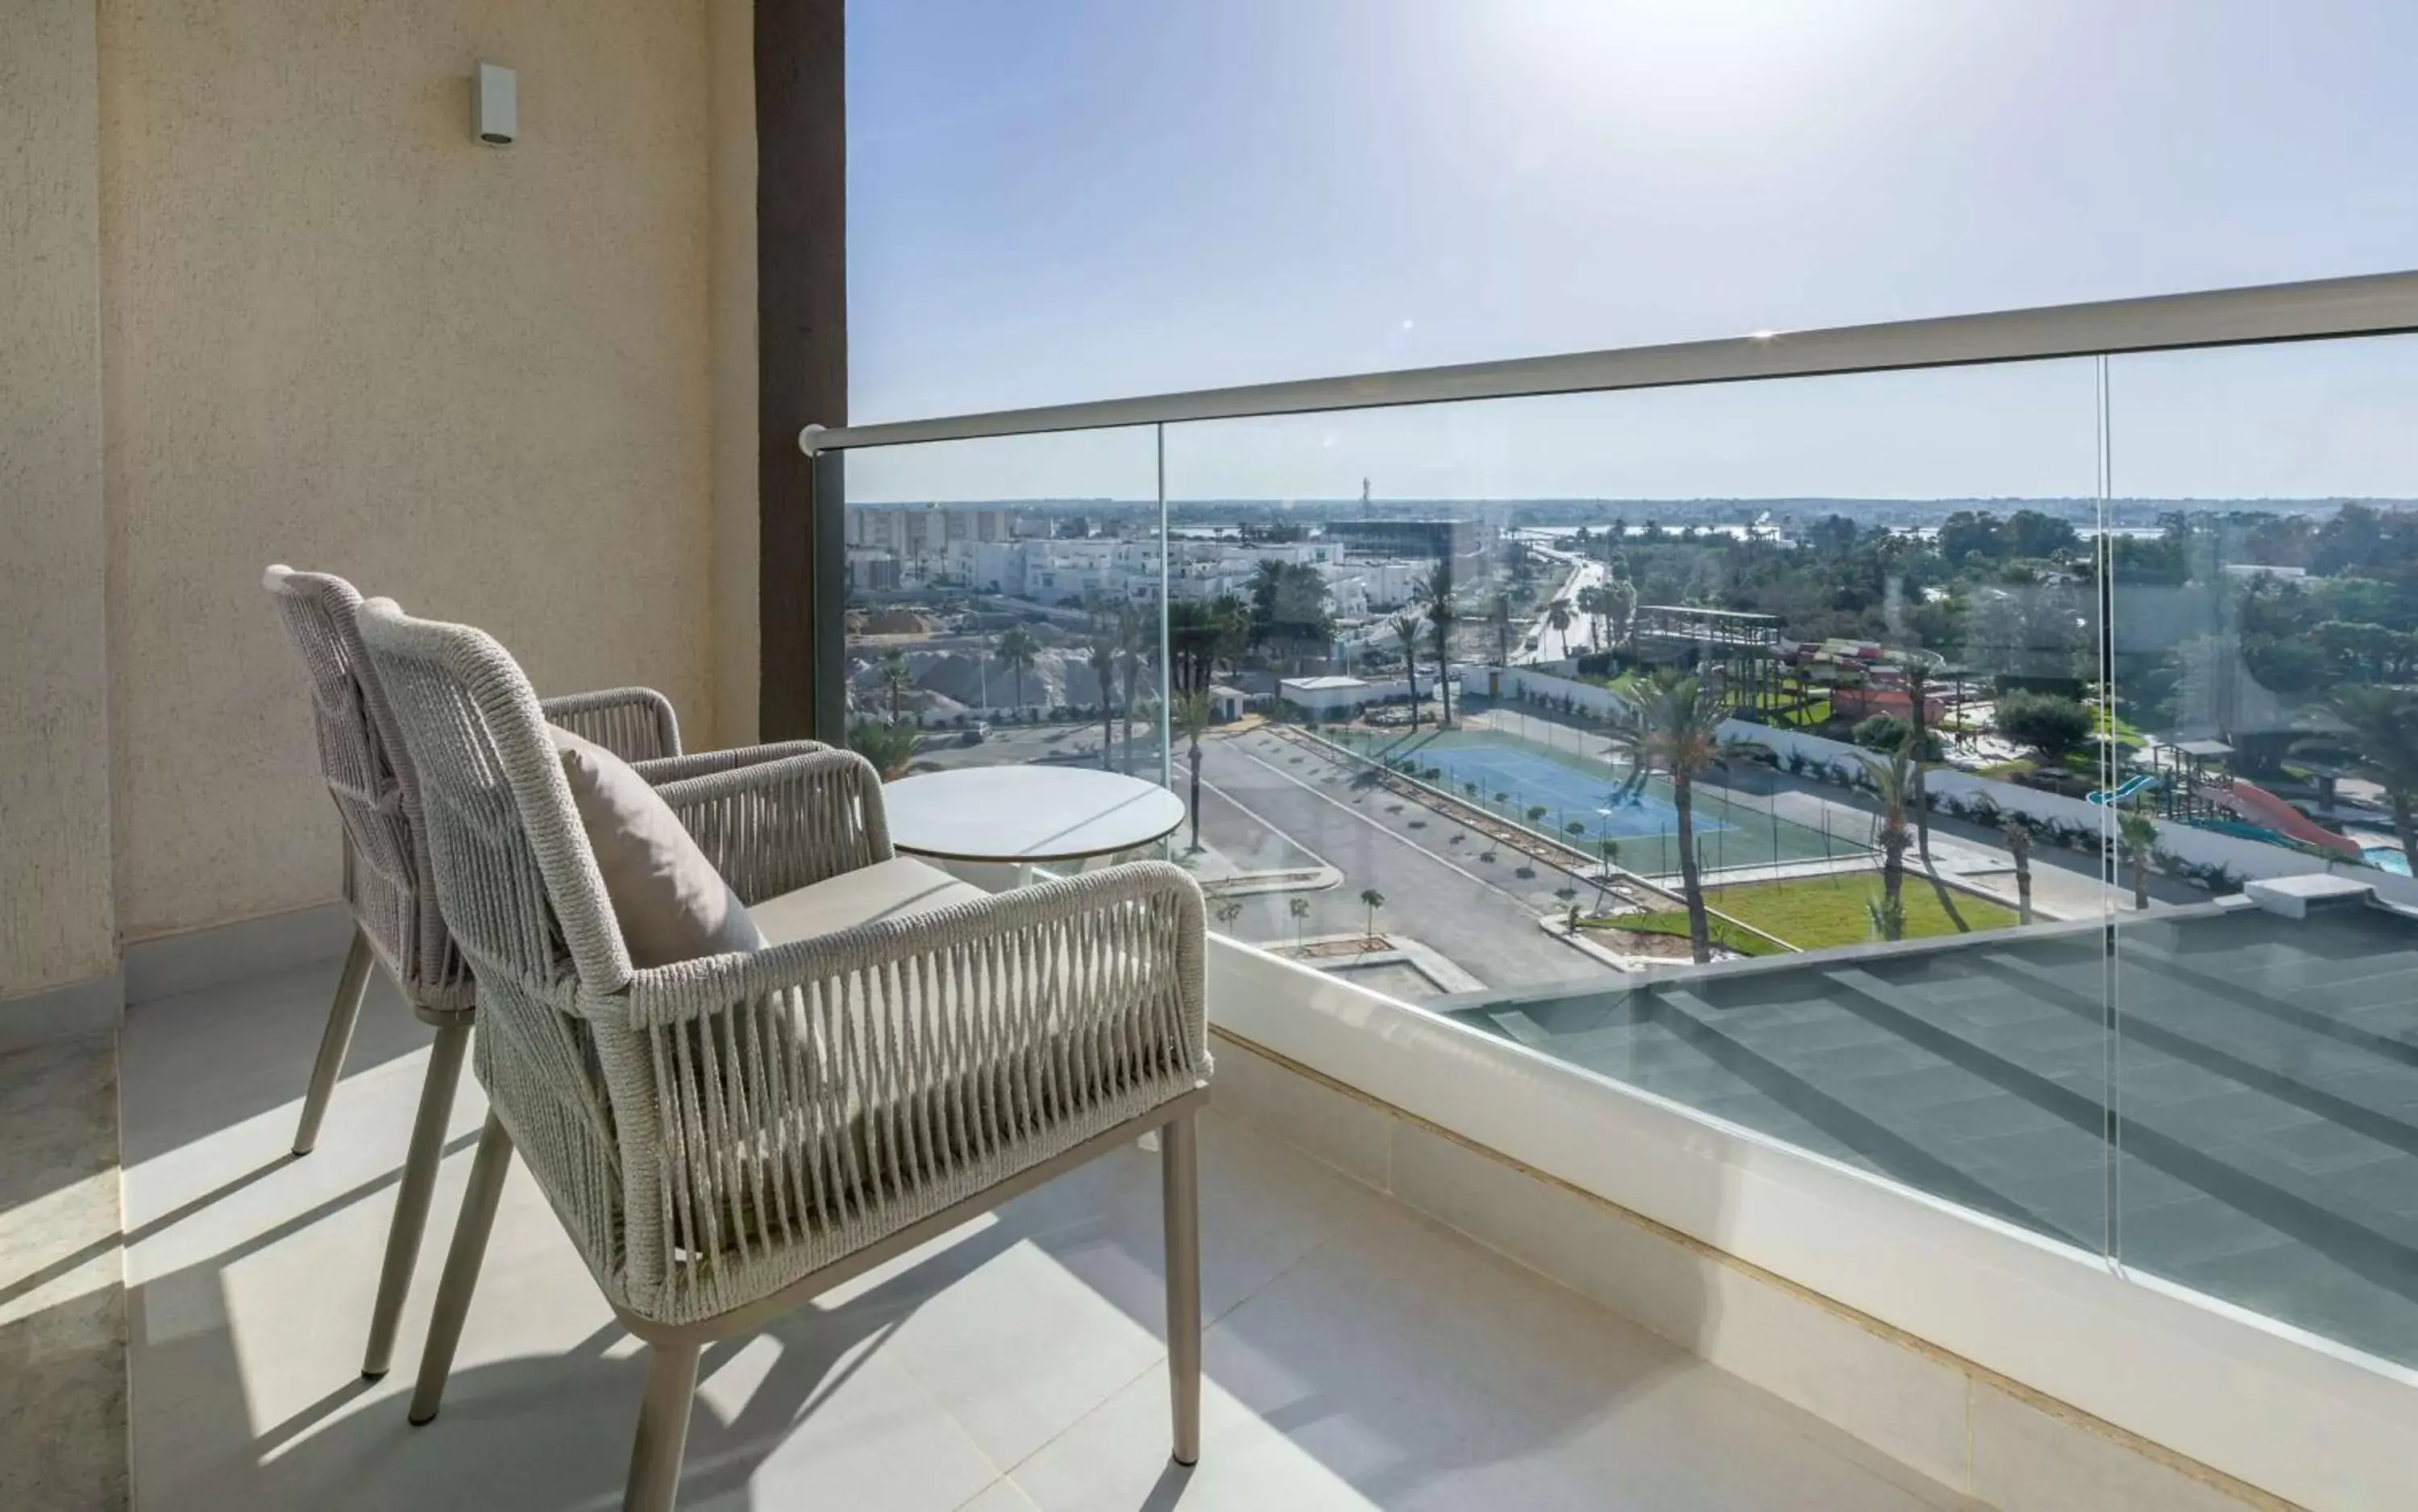 View (from property/room), Pool View in Hilton Skanes Monastir Beach Resort